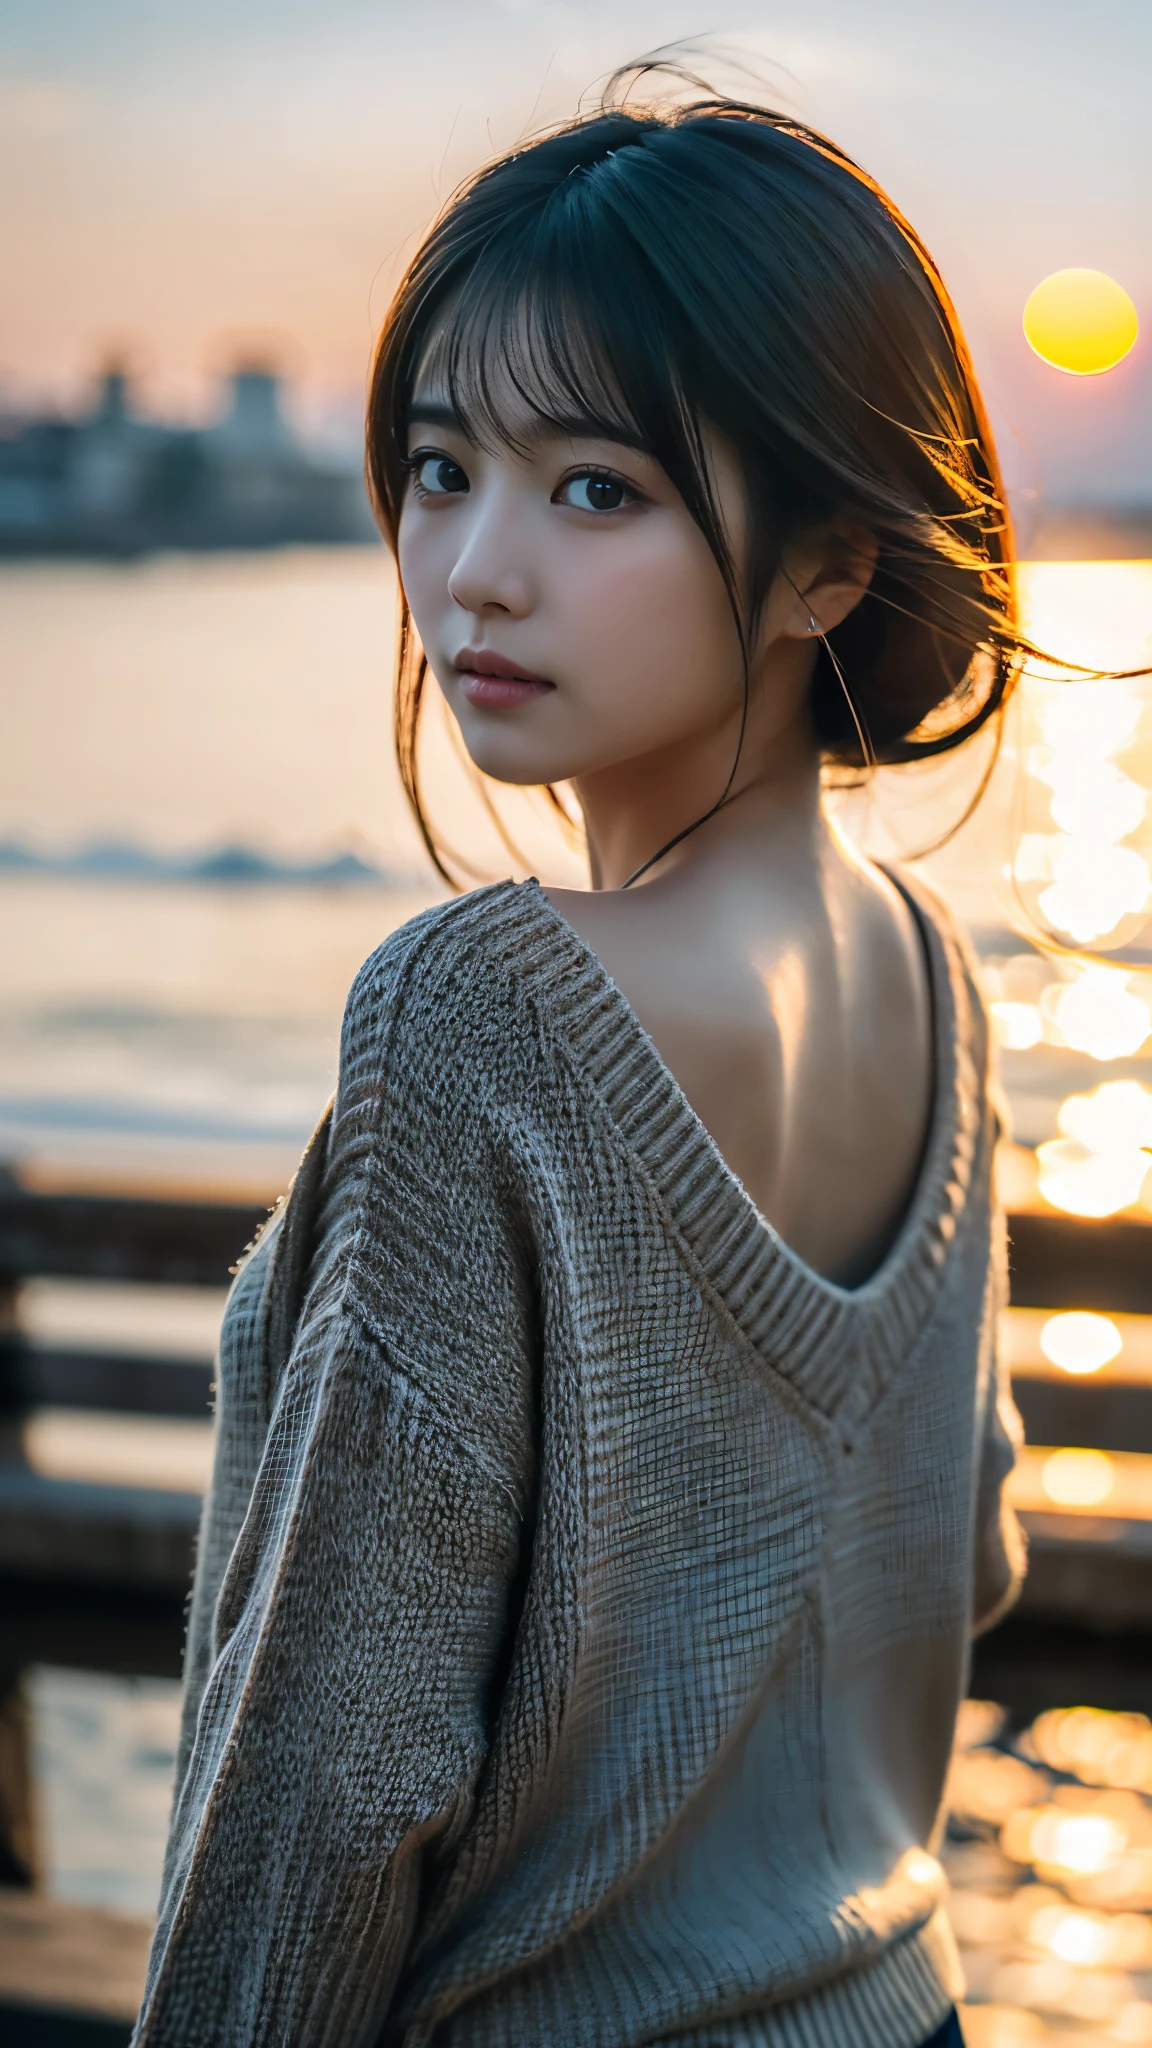 (傑作:1.2),(最好的品質),(非常詳細:1.2),(高解析度),(逼真的棒),(原始照片),8K,穿著黑色毛衣的女人的特寫,柔和的人像拍攝,美丽的日本女人,華麗的臉肖像,眼睛光,人本身的女孩,非常美麗的臉,美麗的肖像,一張可愛精緻的臉,美麗的年輕日本女人,成熟髮型,回望(夕陽在背景中),(((模糊背景))),喙(柔和的光),(越過肩膀),(POV 镜头),((动态头发运动:1.2))